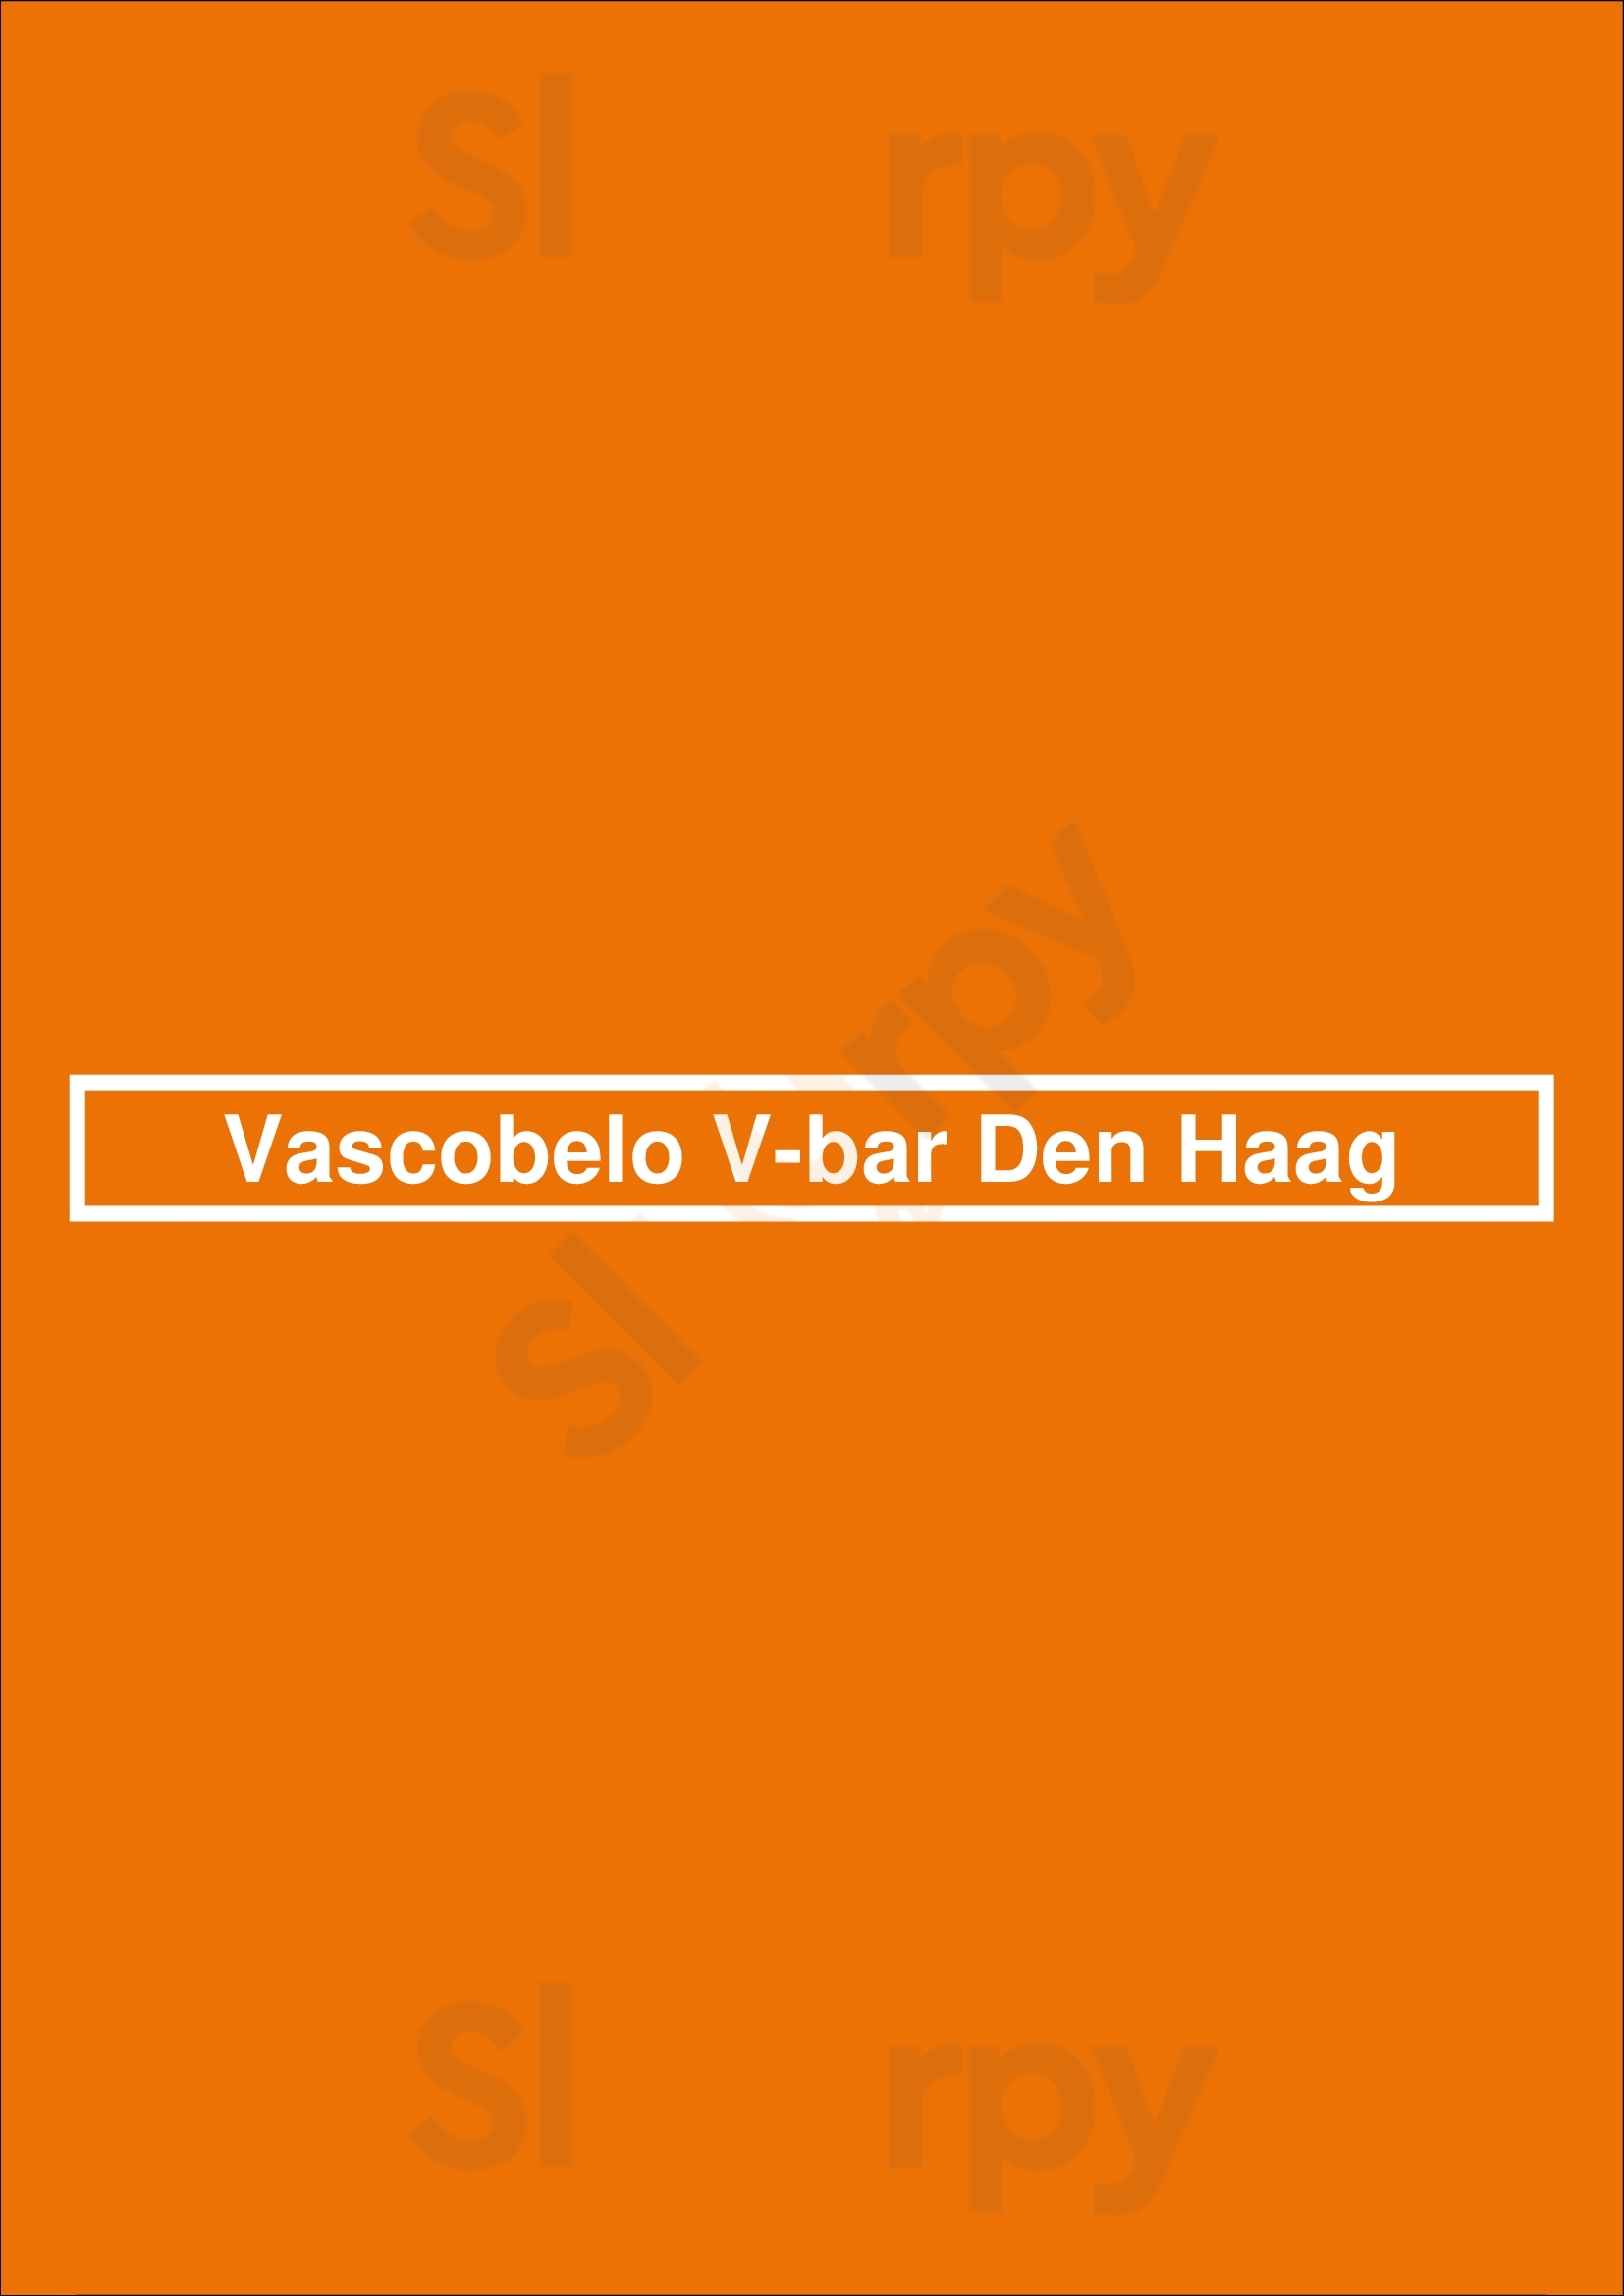 Vascobelo V-bar Den Haag Den Haag Menu - 1